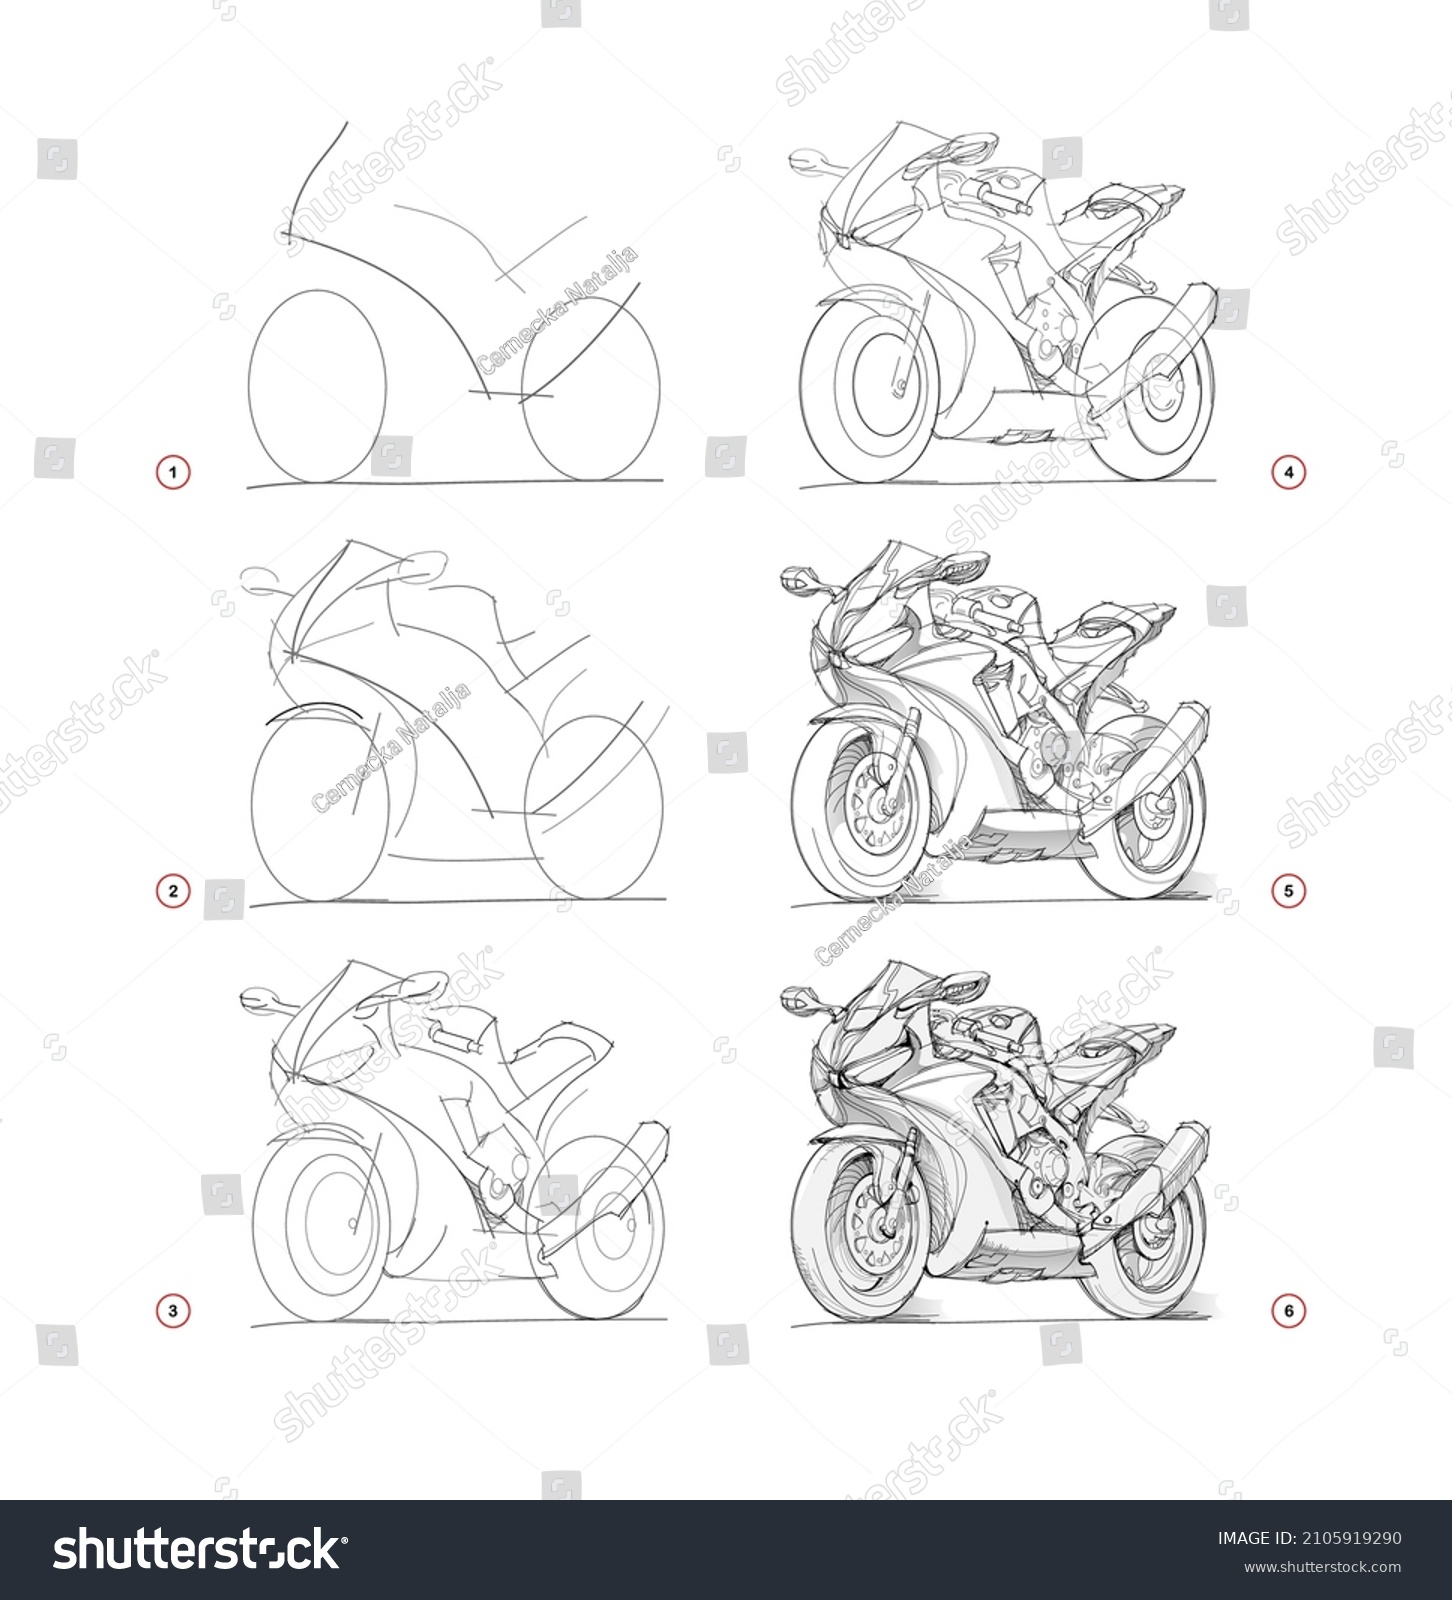 Мотоцикл построение рисунок